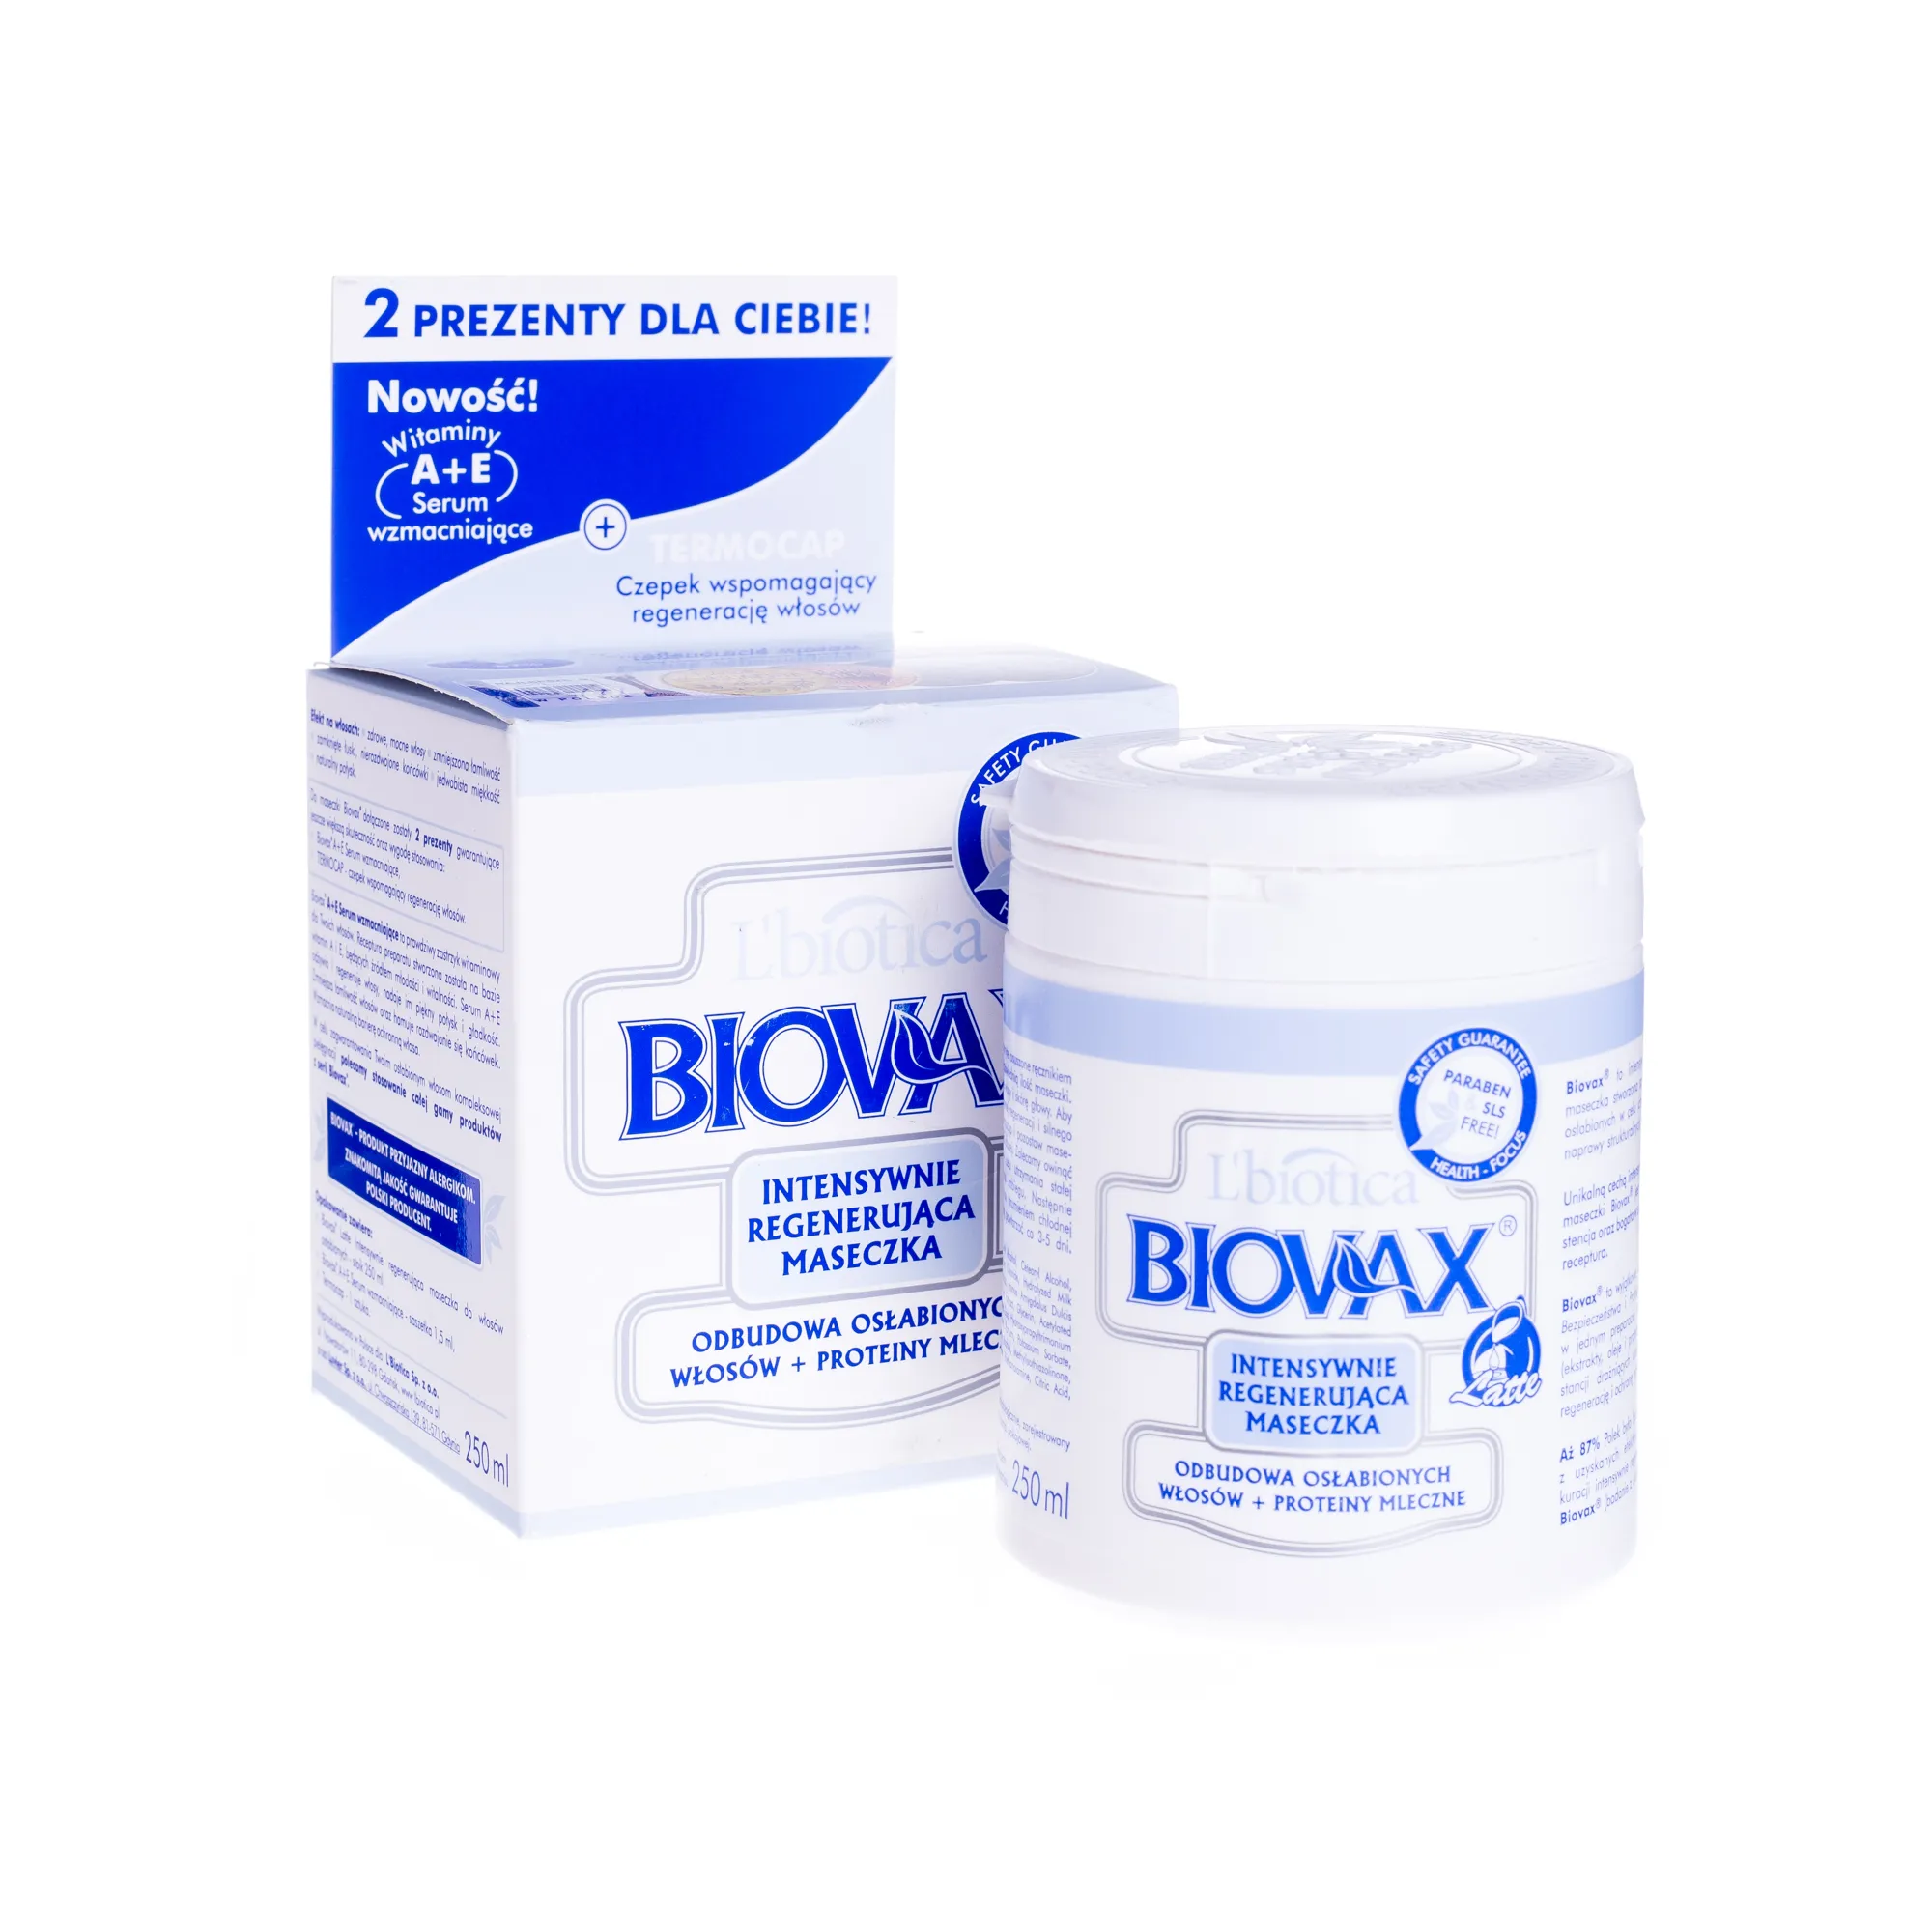 L'biotica Biovax, Intensywnie regenerująca maseczka, odbudowa osłabionych włosów + proteiny mleczne, 250 ml 